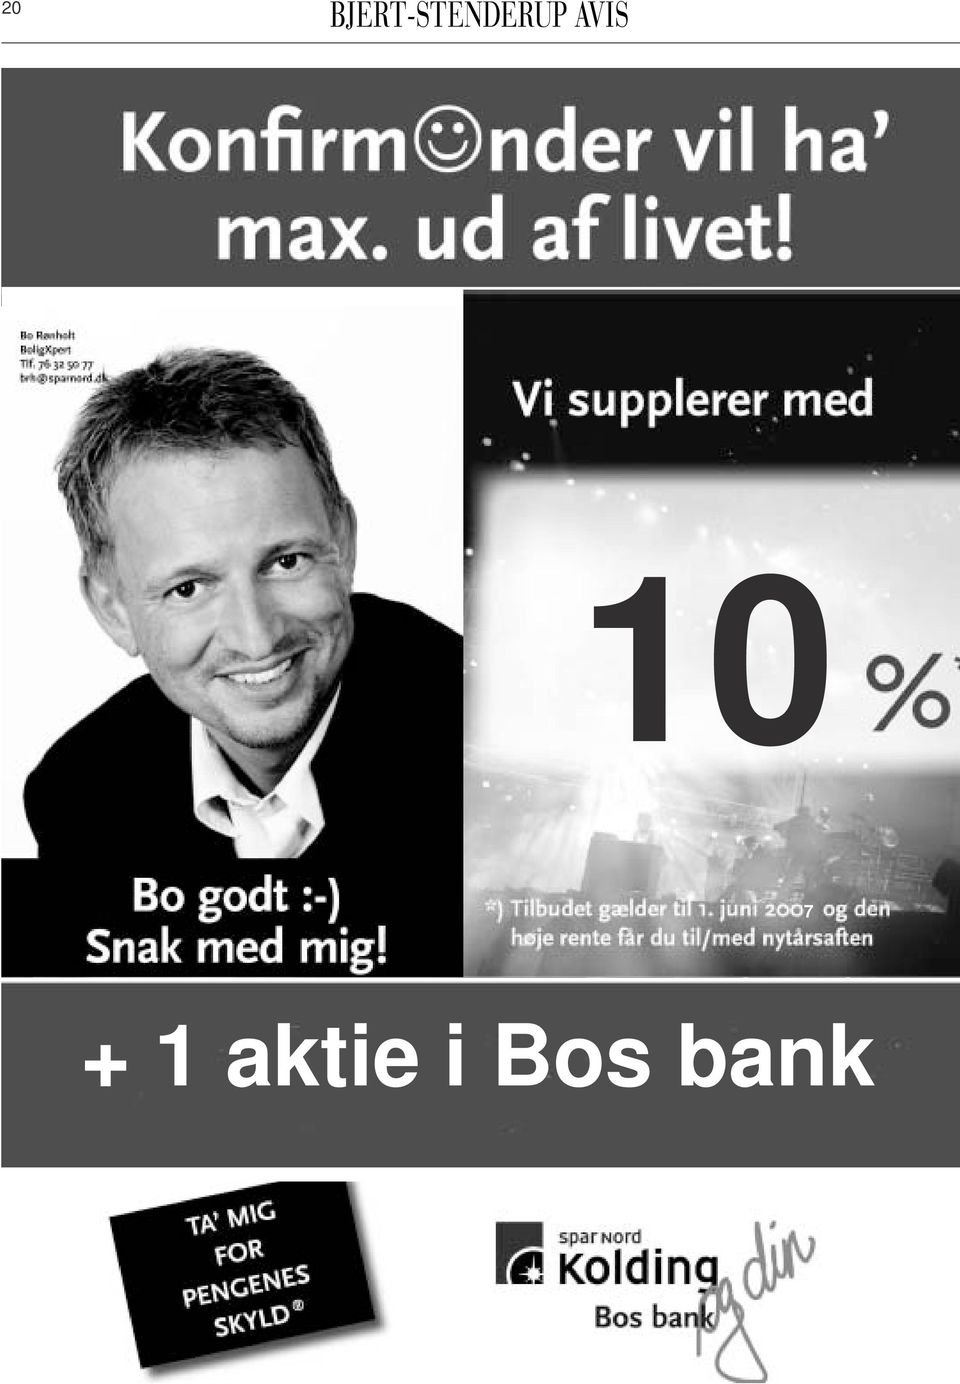 Bos bank